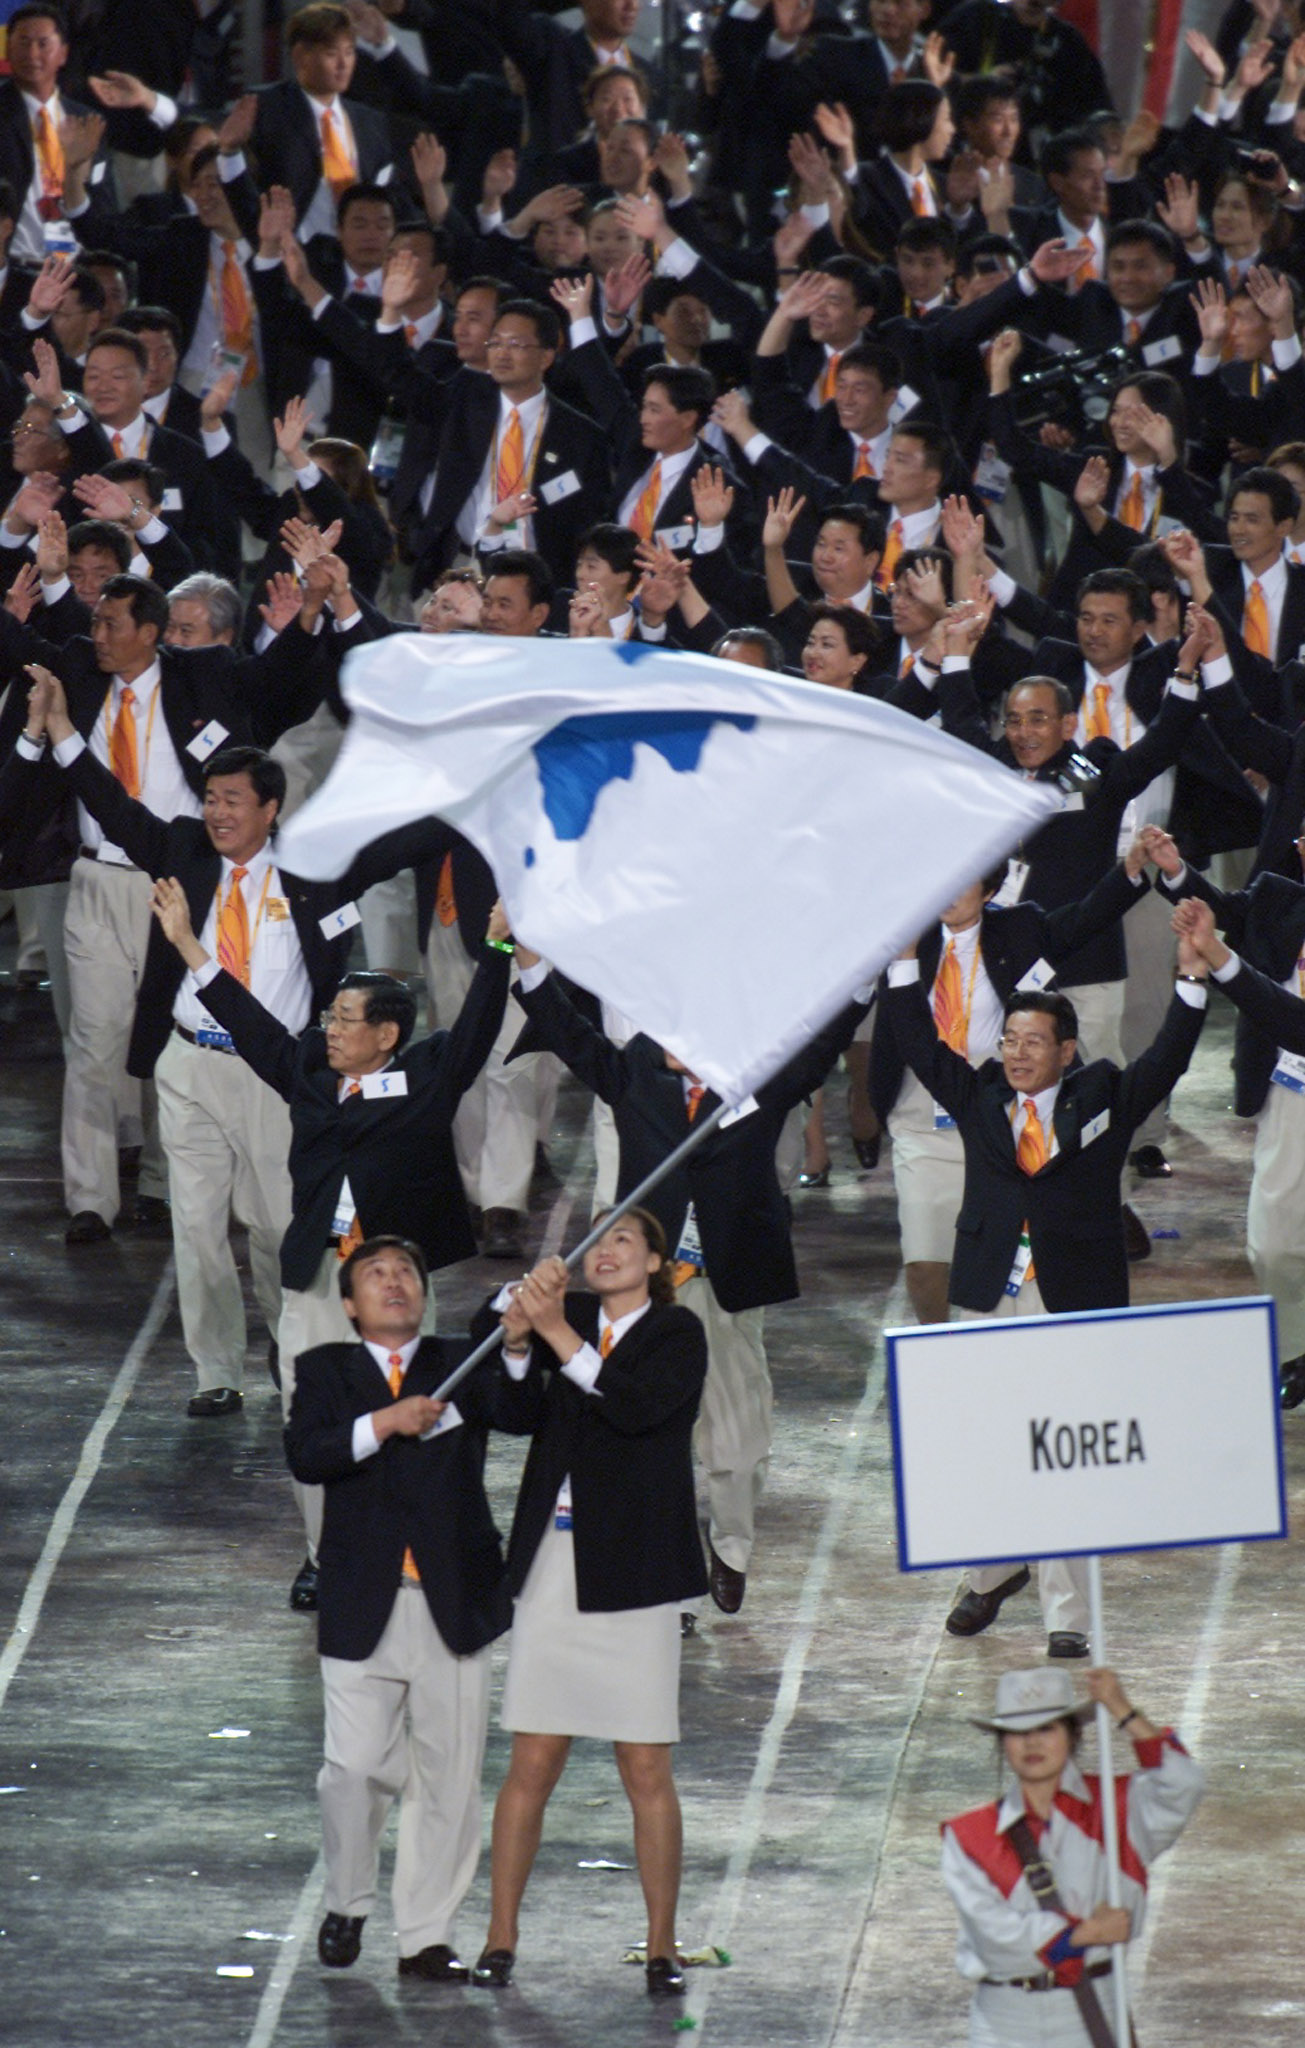 Korea Olympic team